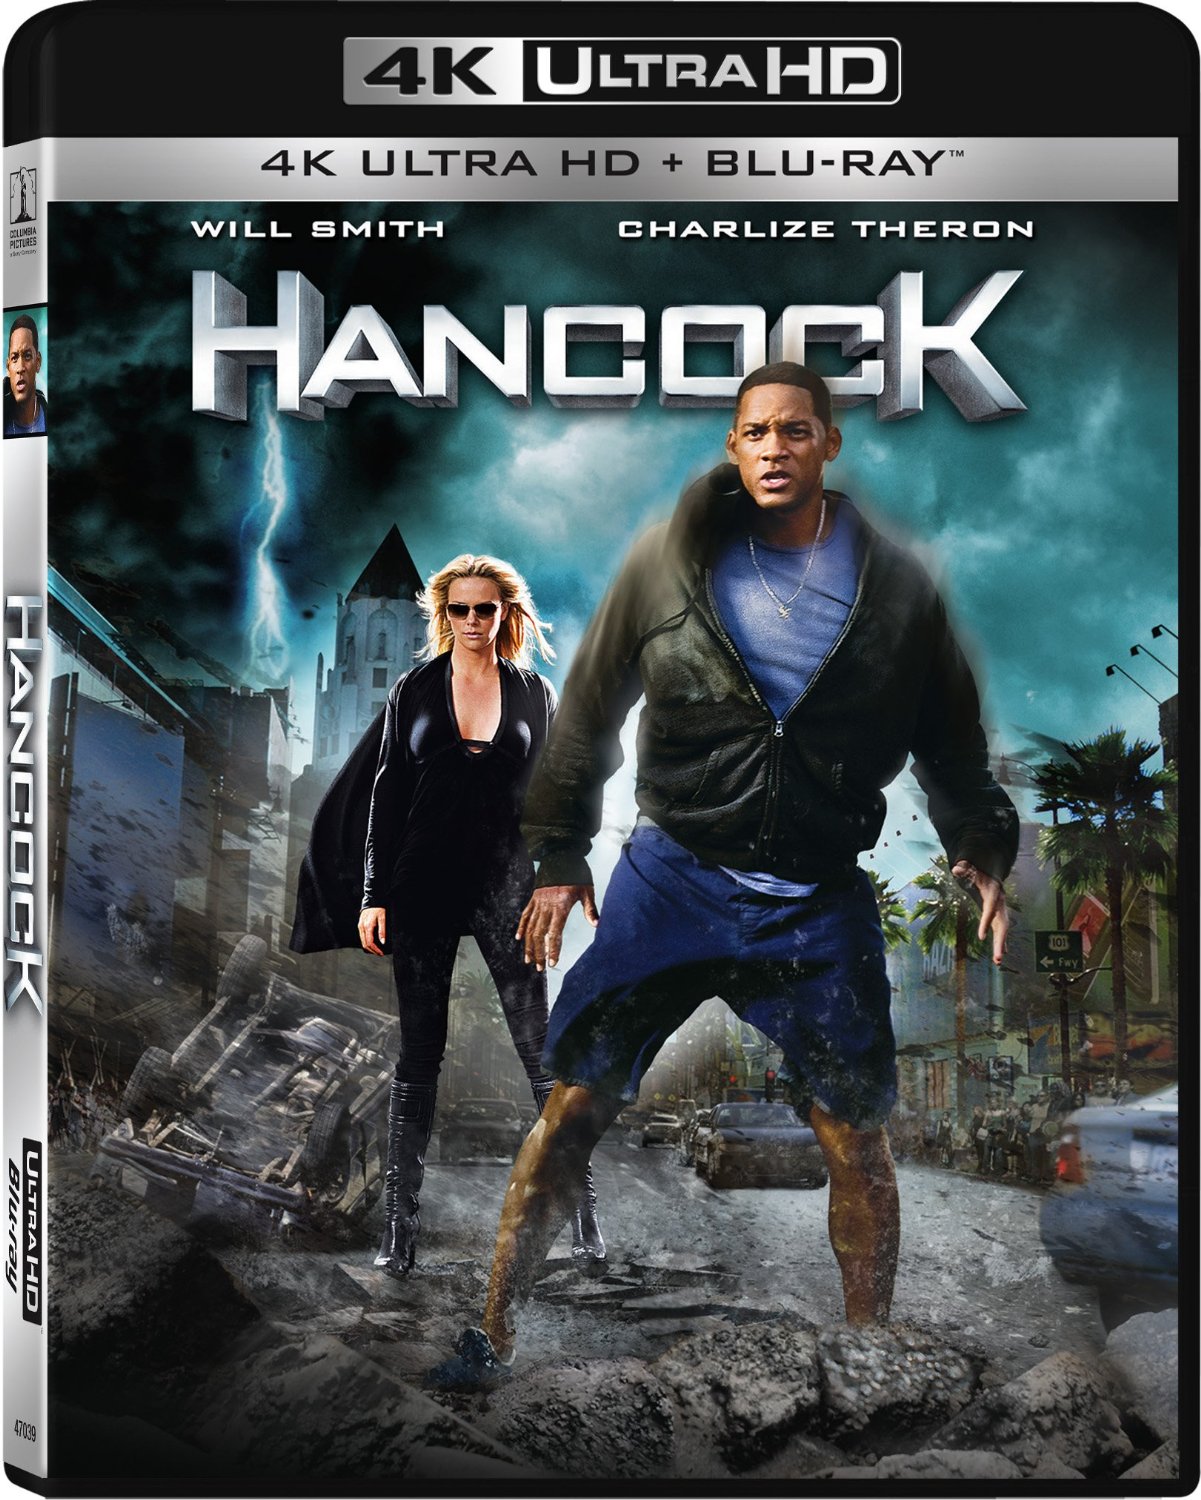 Blog HD LAND - Toute l'actualité de la HD: Nouveauté Blu-ray : The